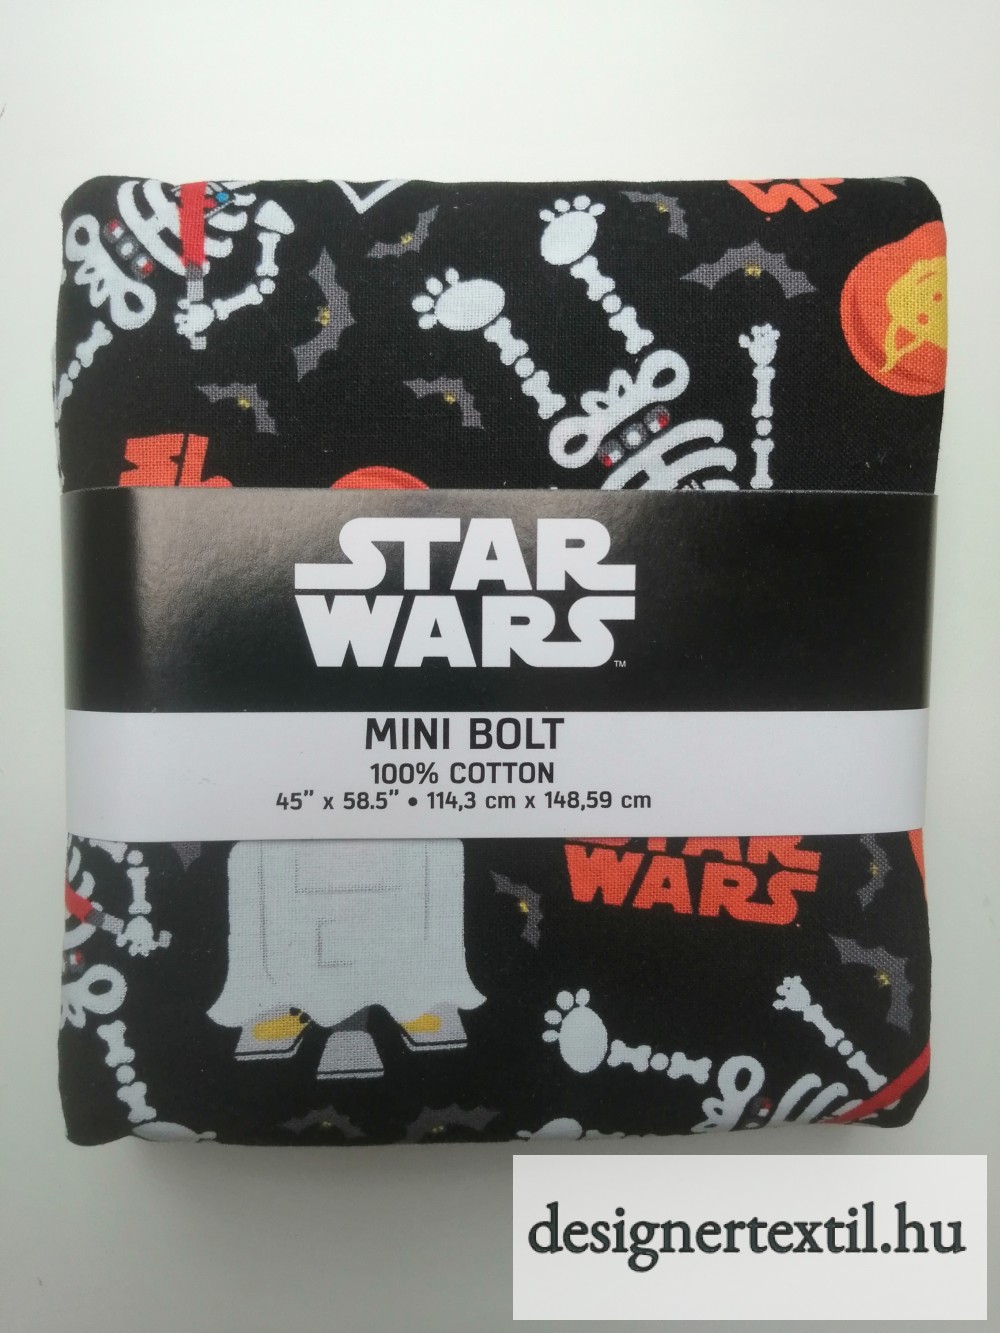 Star Wars – Halloween - sötétben világító pamutvászon 114 x 148 cm (Star Wars – Halloween – Mini Bolt)